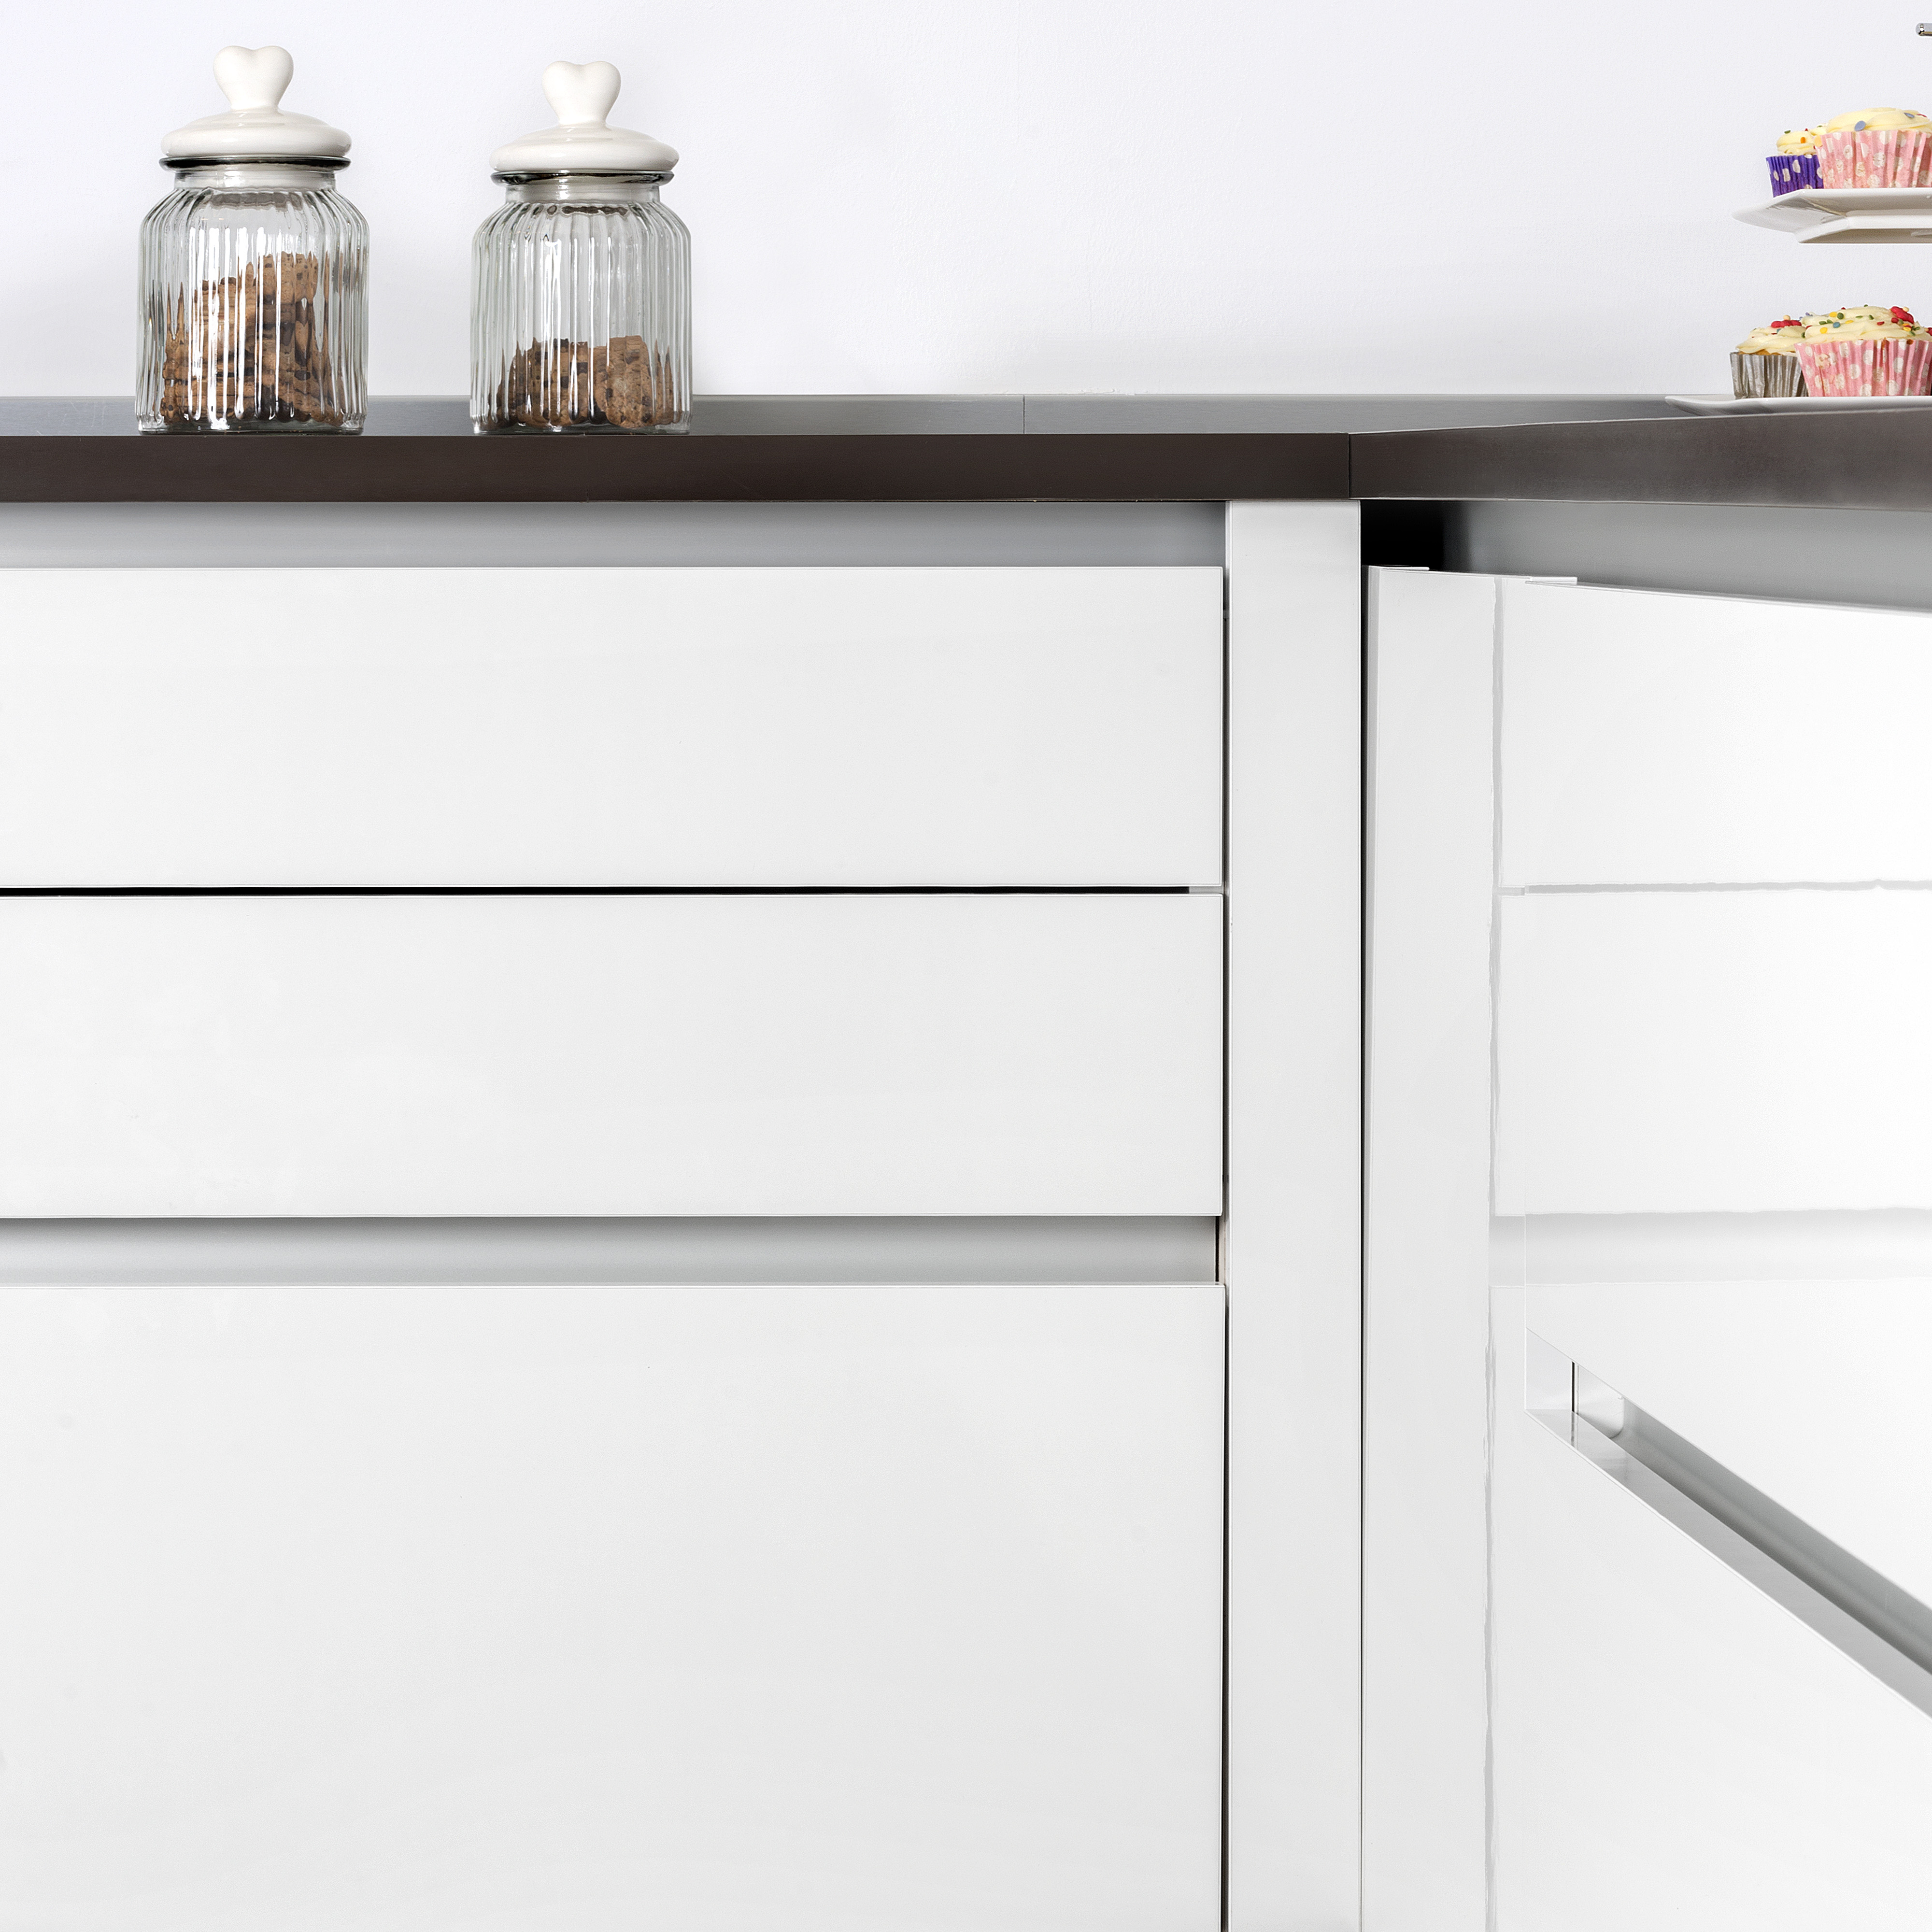  Kit Gola a profil central pour meubles de cuisine, Peint en blanc, Aluminium.